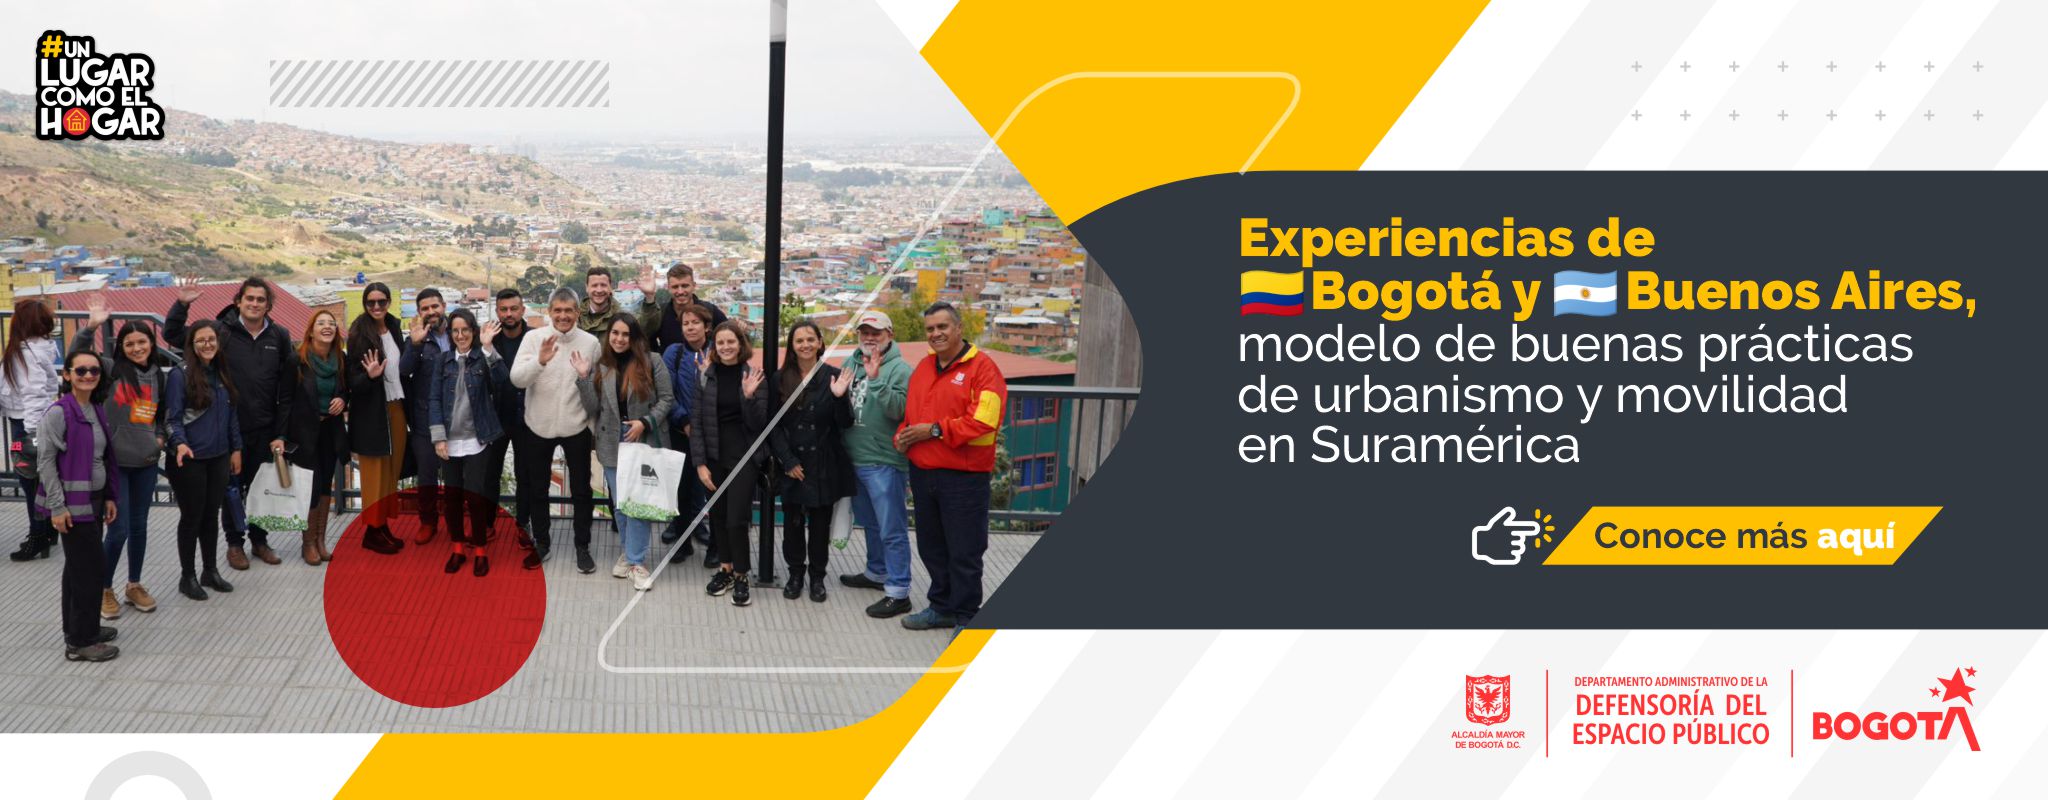 Experiencias de Bogotá y Buenos Aires, modelo de buenas prácticas de urbanismo y movilidad en Suramérica